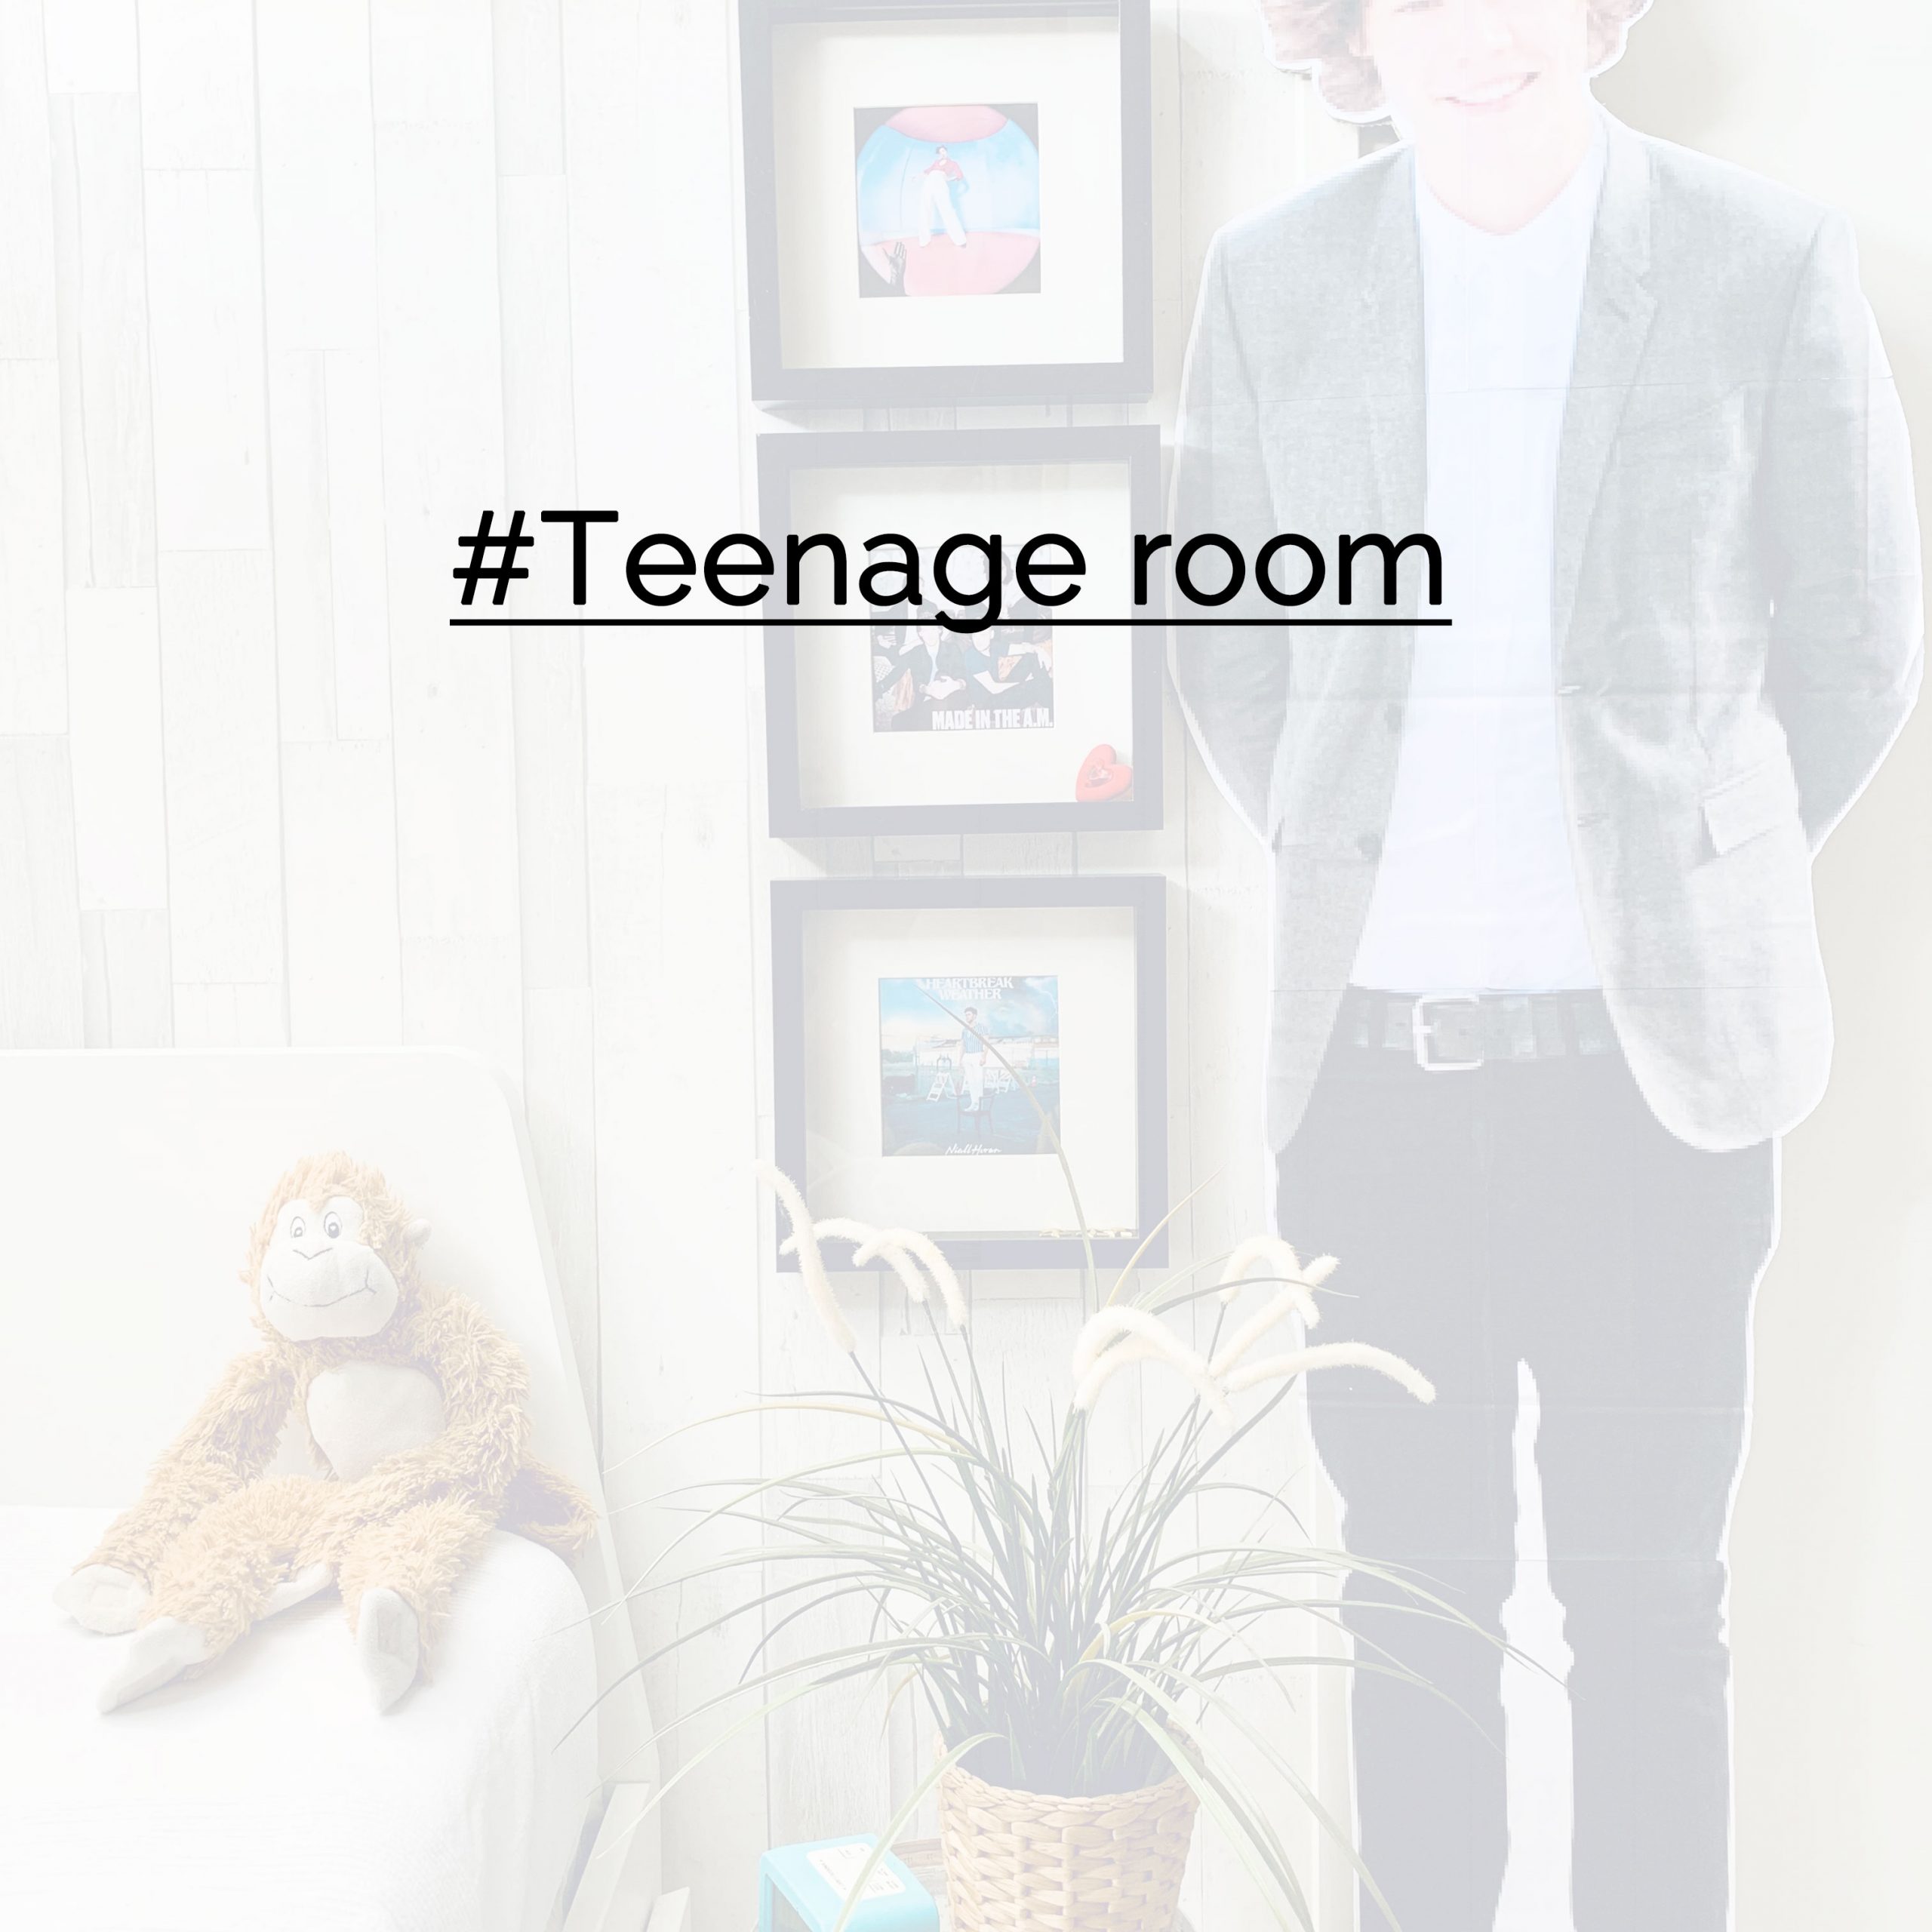 Teenage room